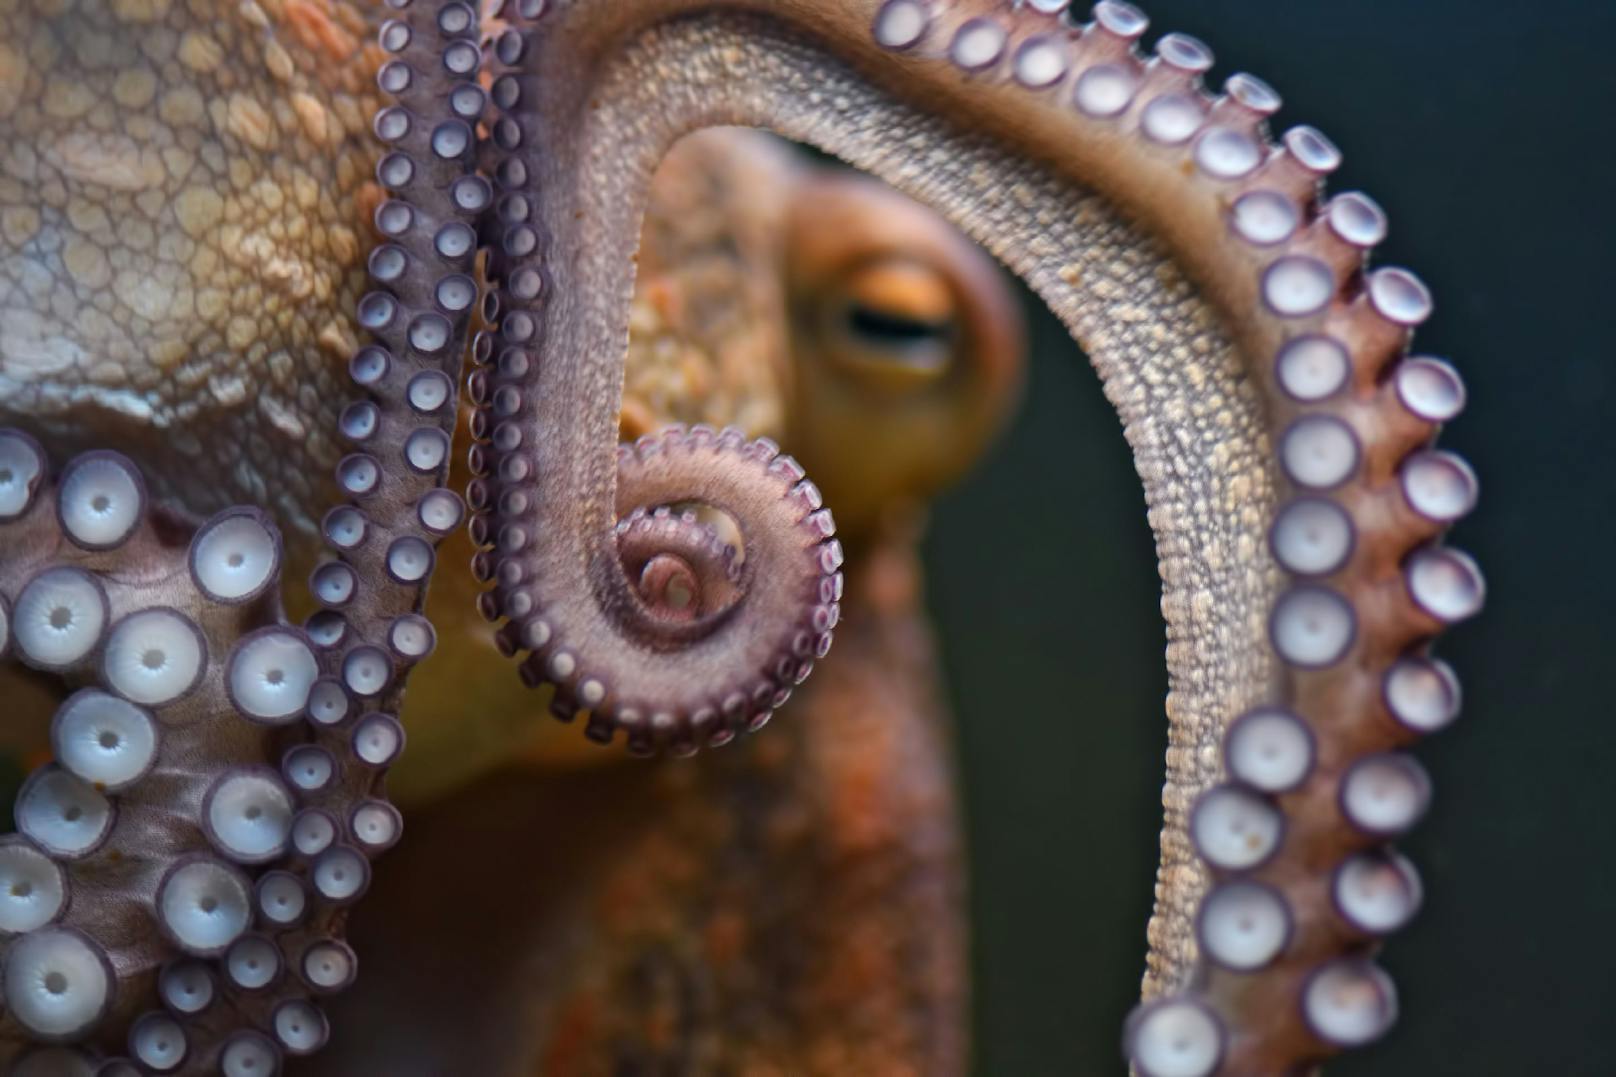 Oktopoden sollen auf Ecstasy ebenso verliebt reagieren wie wir Menschen. (Symbolbild)